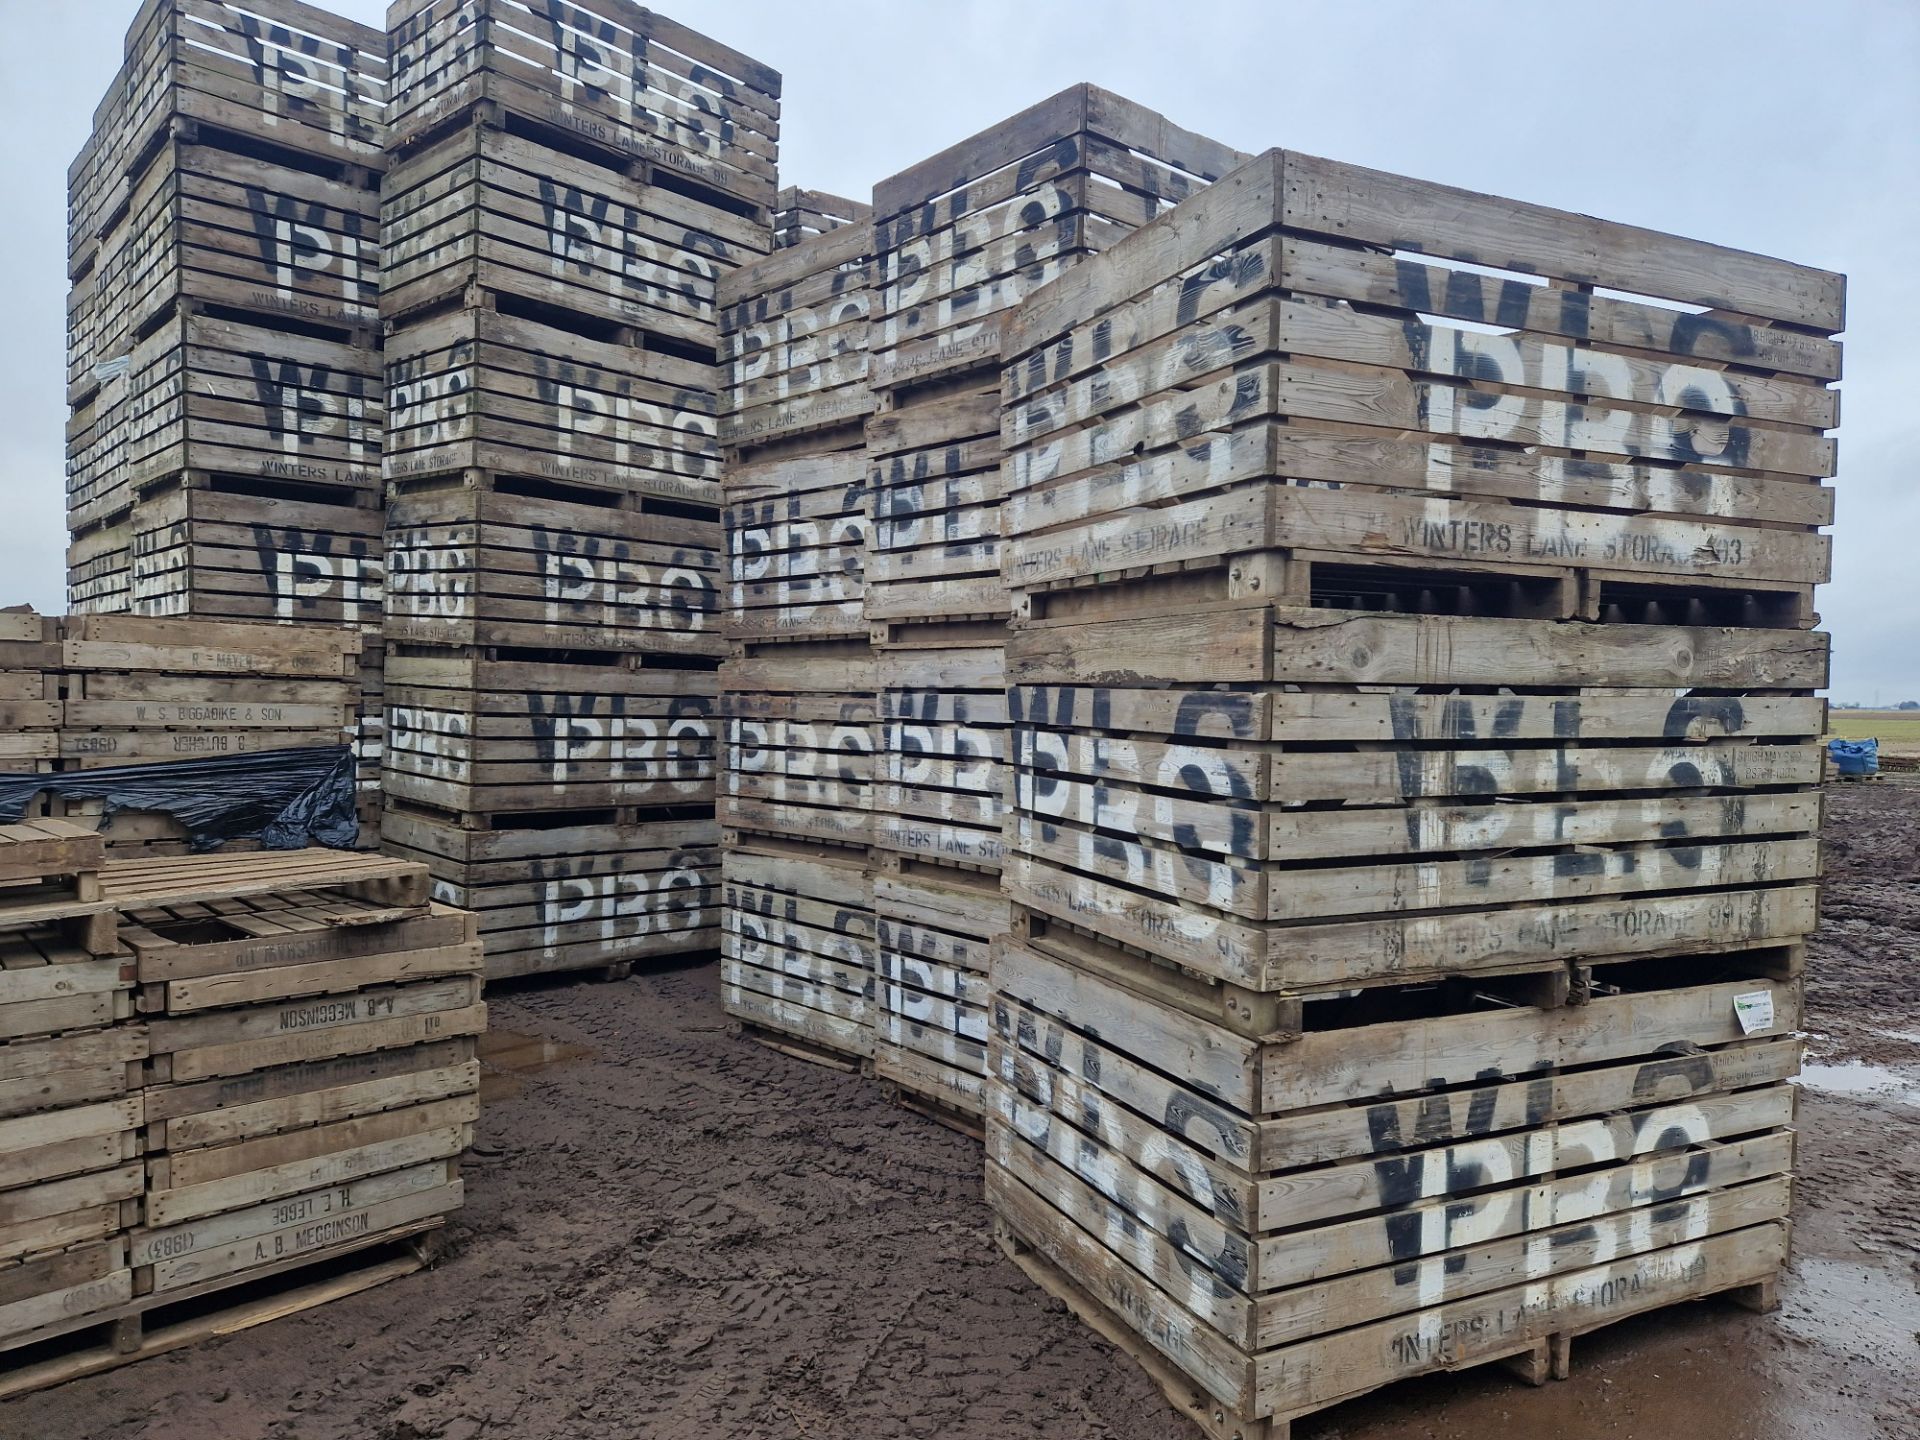 84 x 1 ton potato boxes